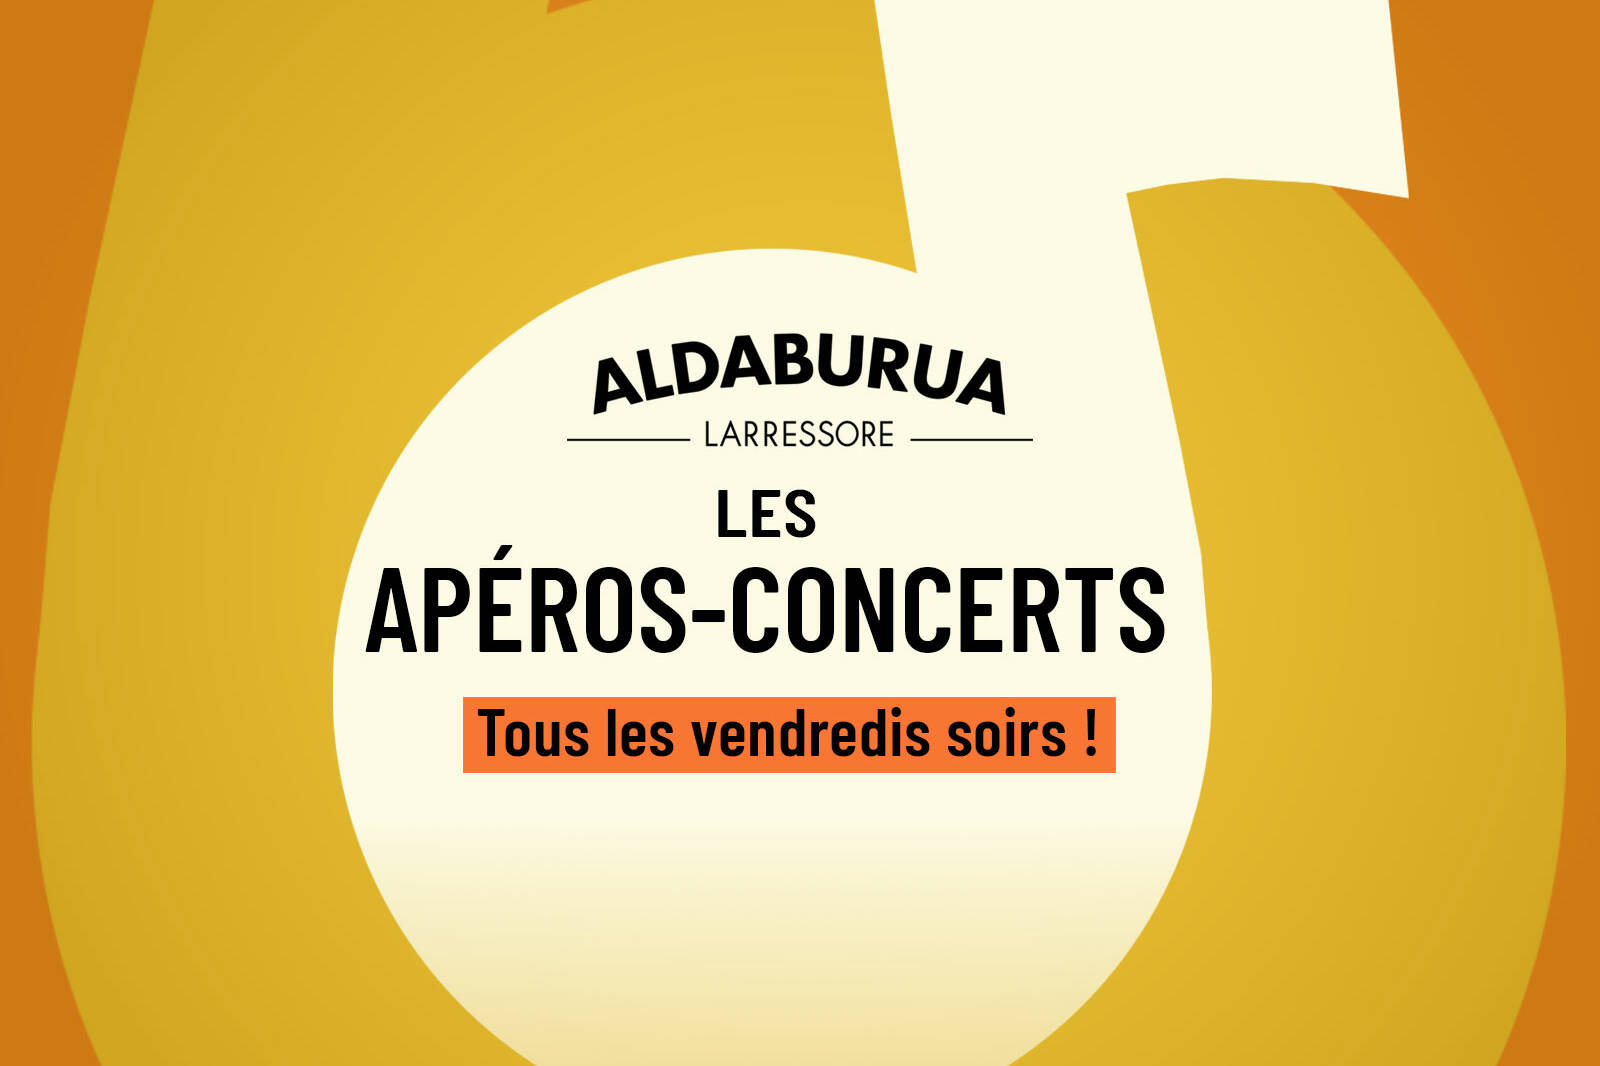 Apéros-concerts à l'auberge Aldaburua - Larressore